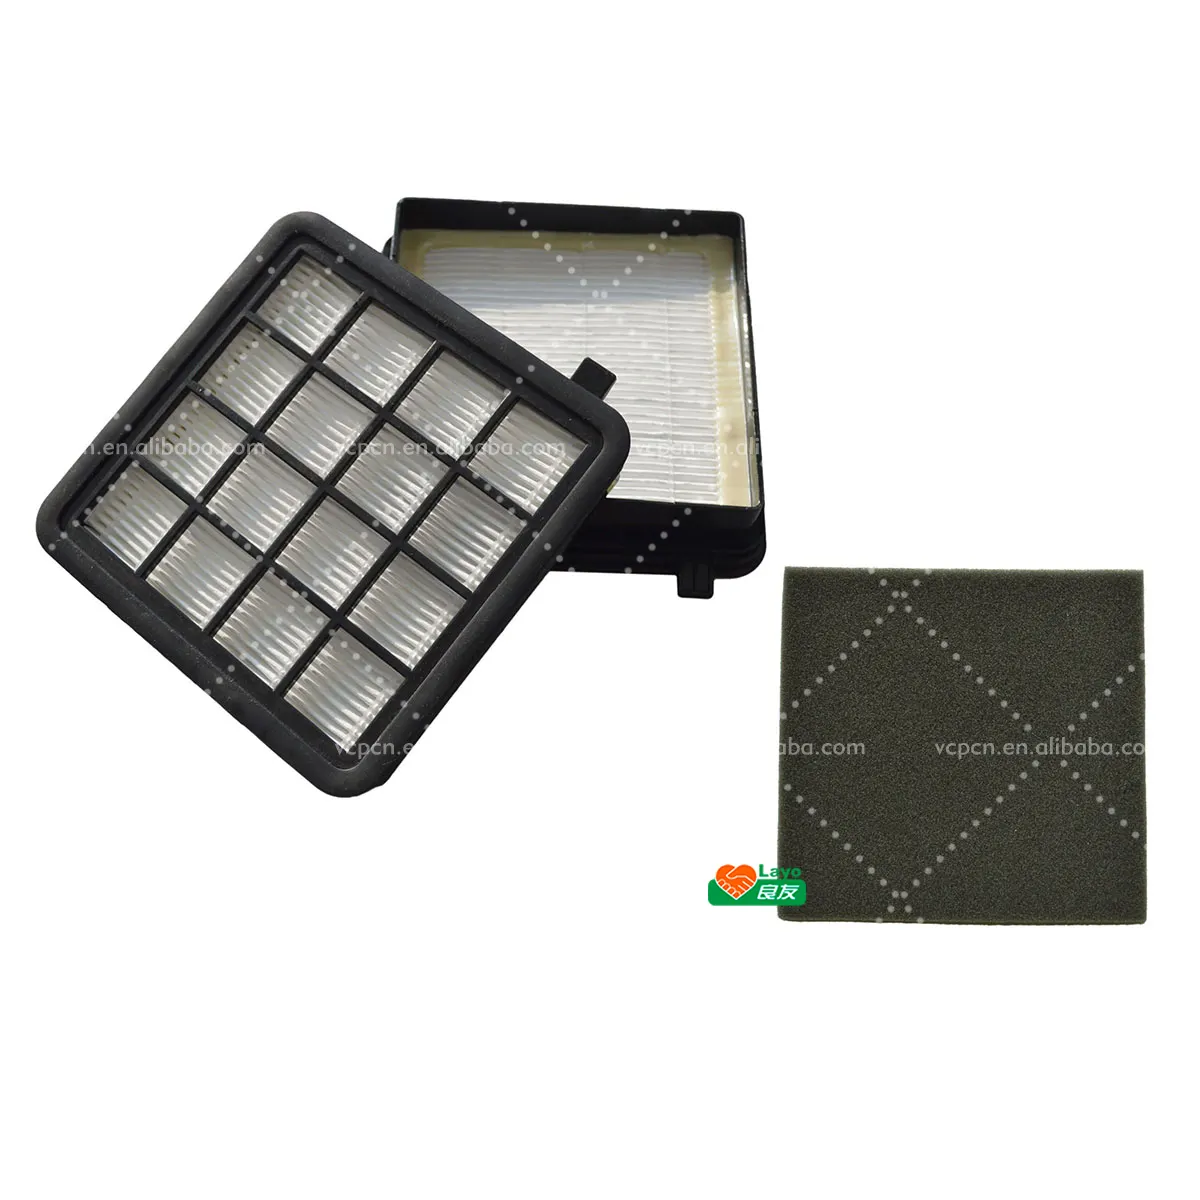 Фильтр для пылесоса ELECTROLUX ZAP9940, Сменный фильтр под заказ, аксессуары, запчасти